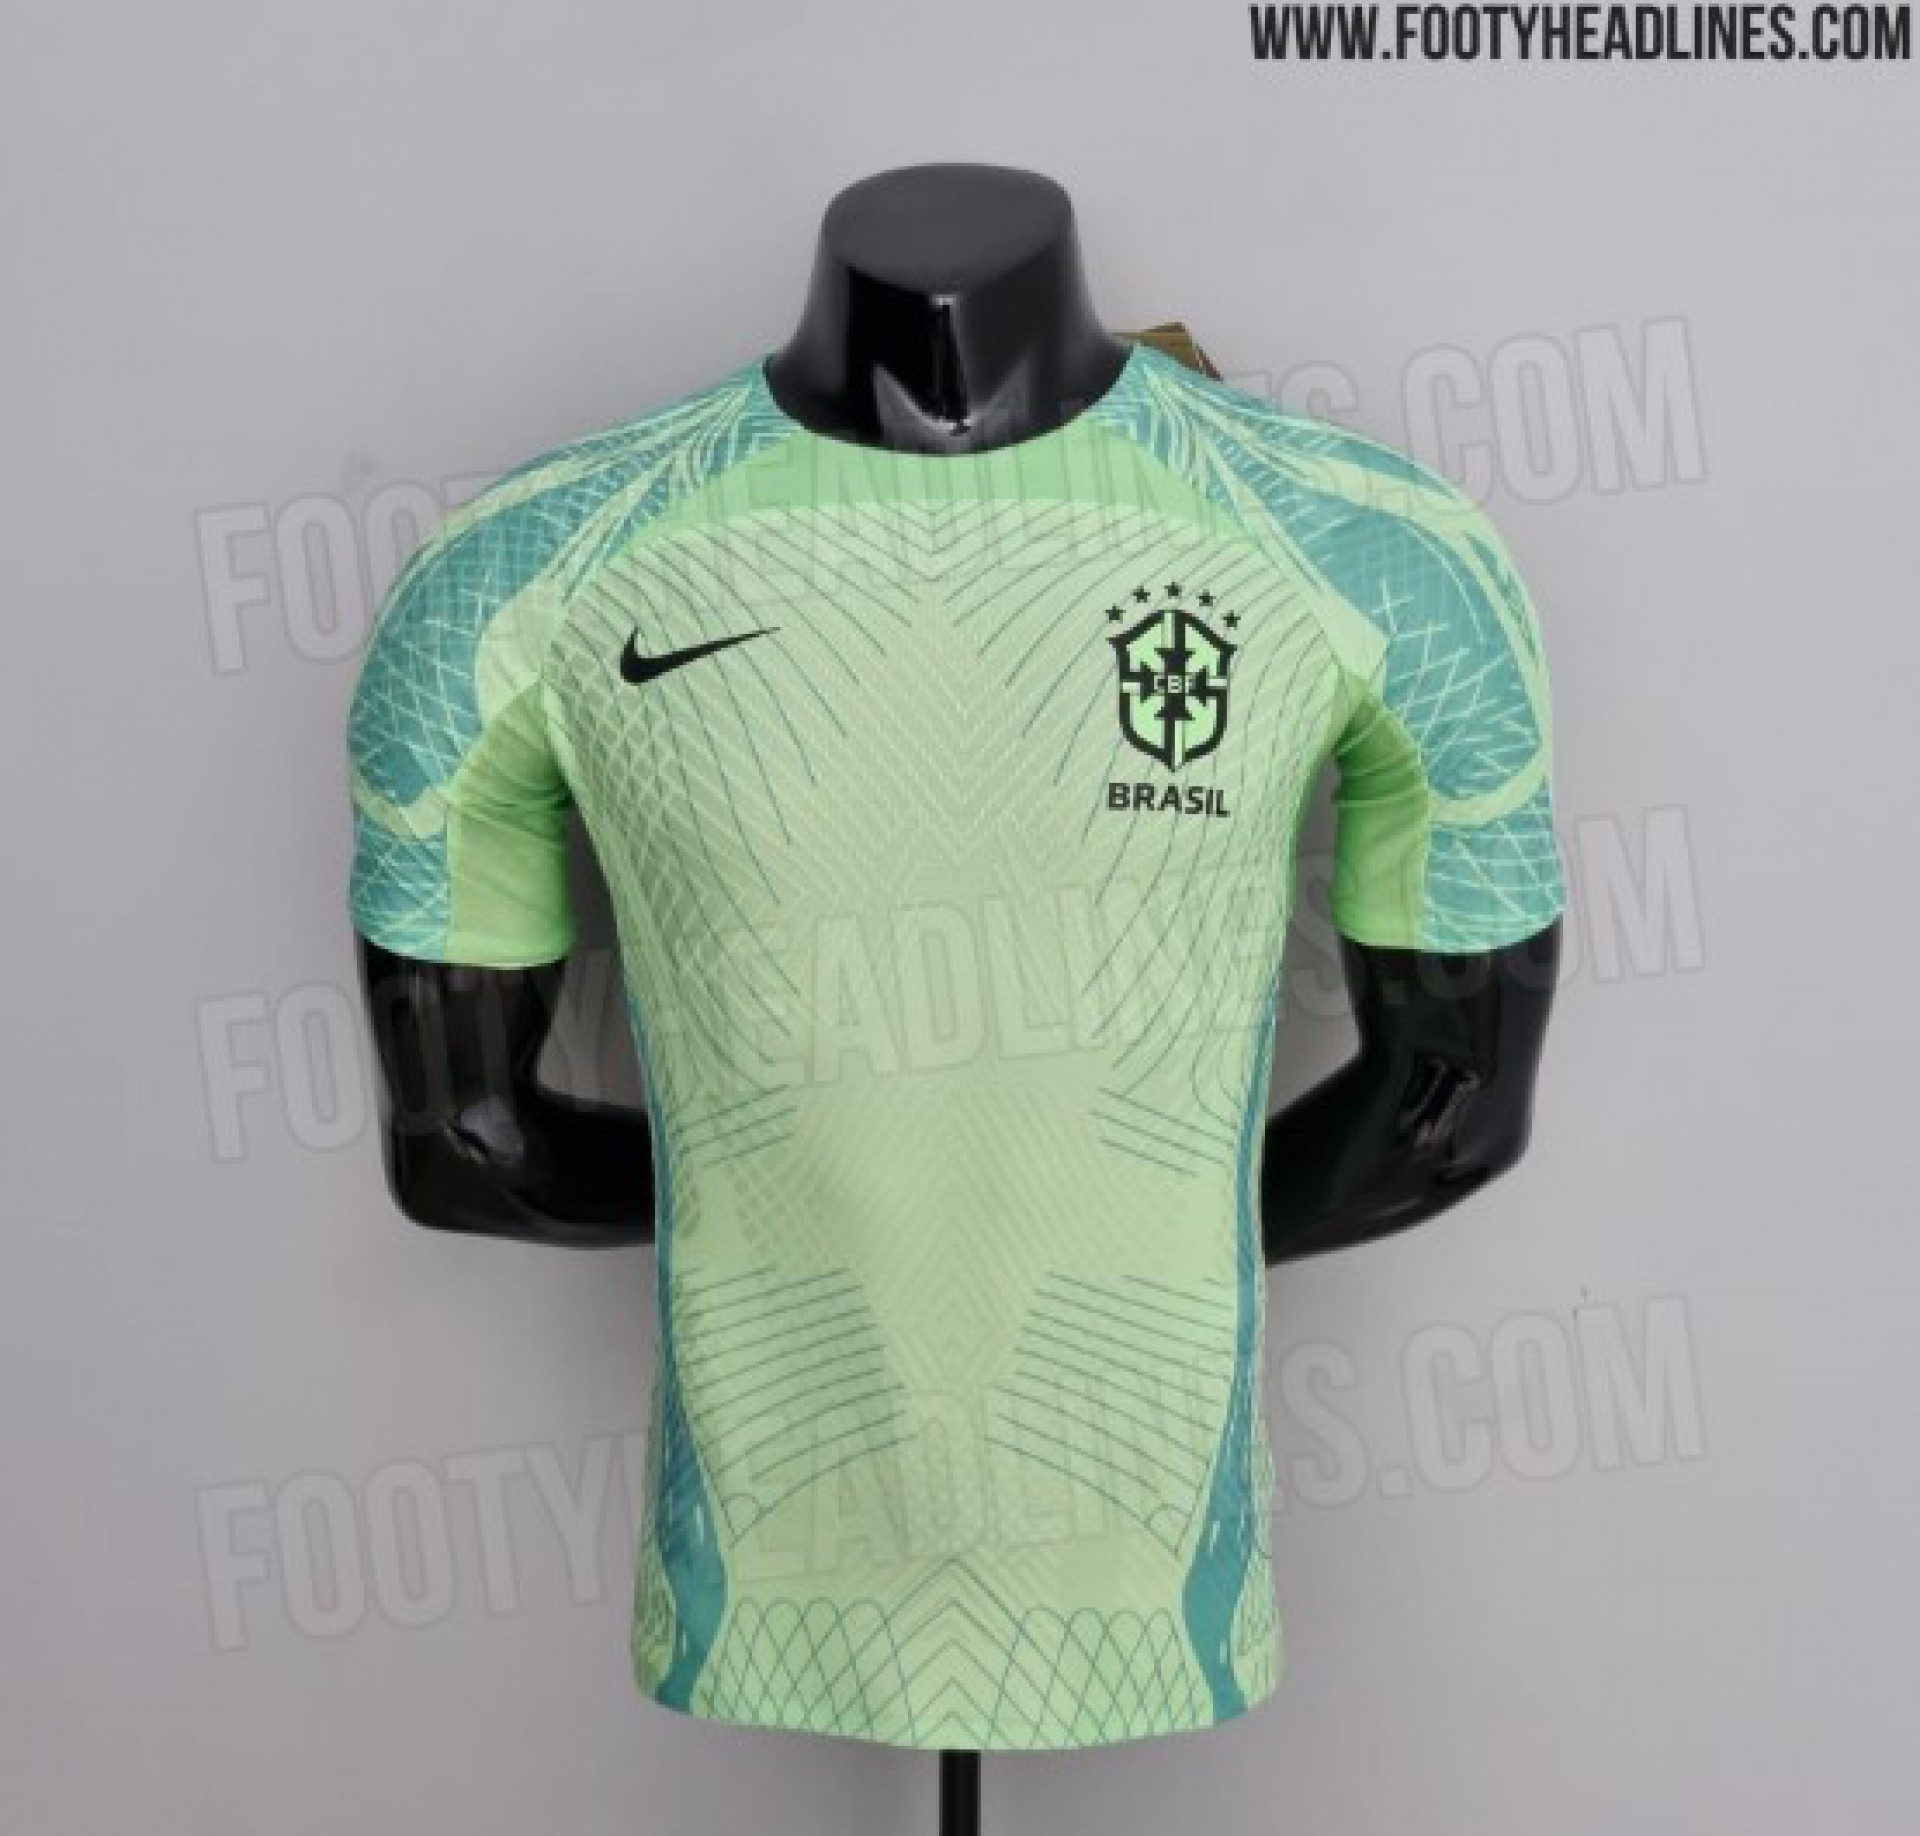 Detalhes da nova camisa de treino da Seleção Brasileira - Reprodução/FootyHeadlines